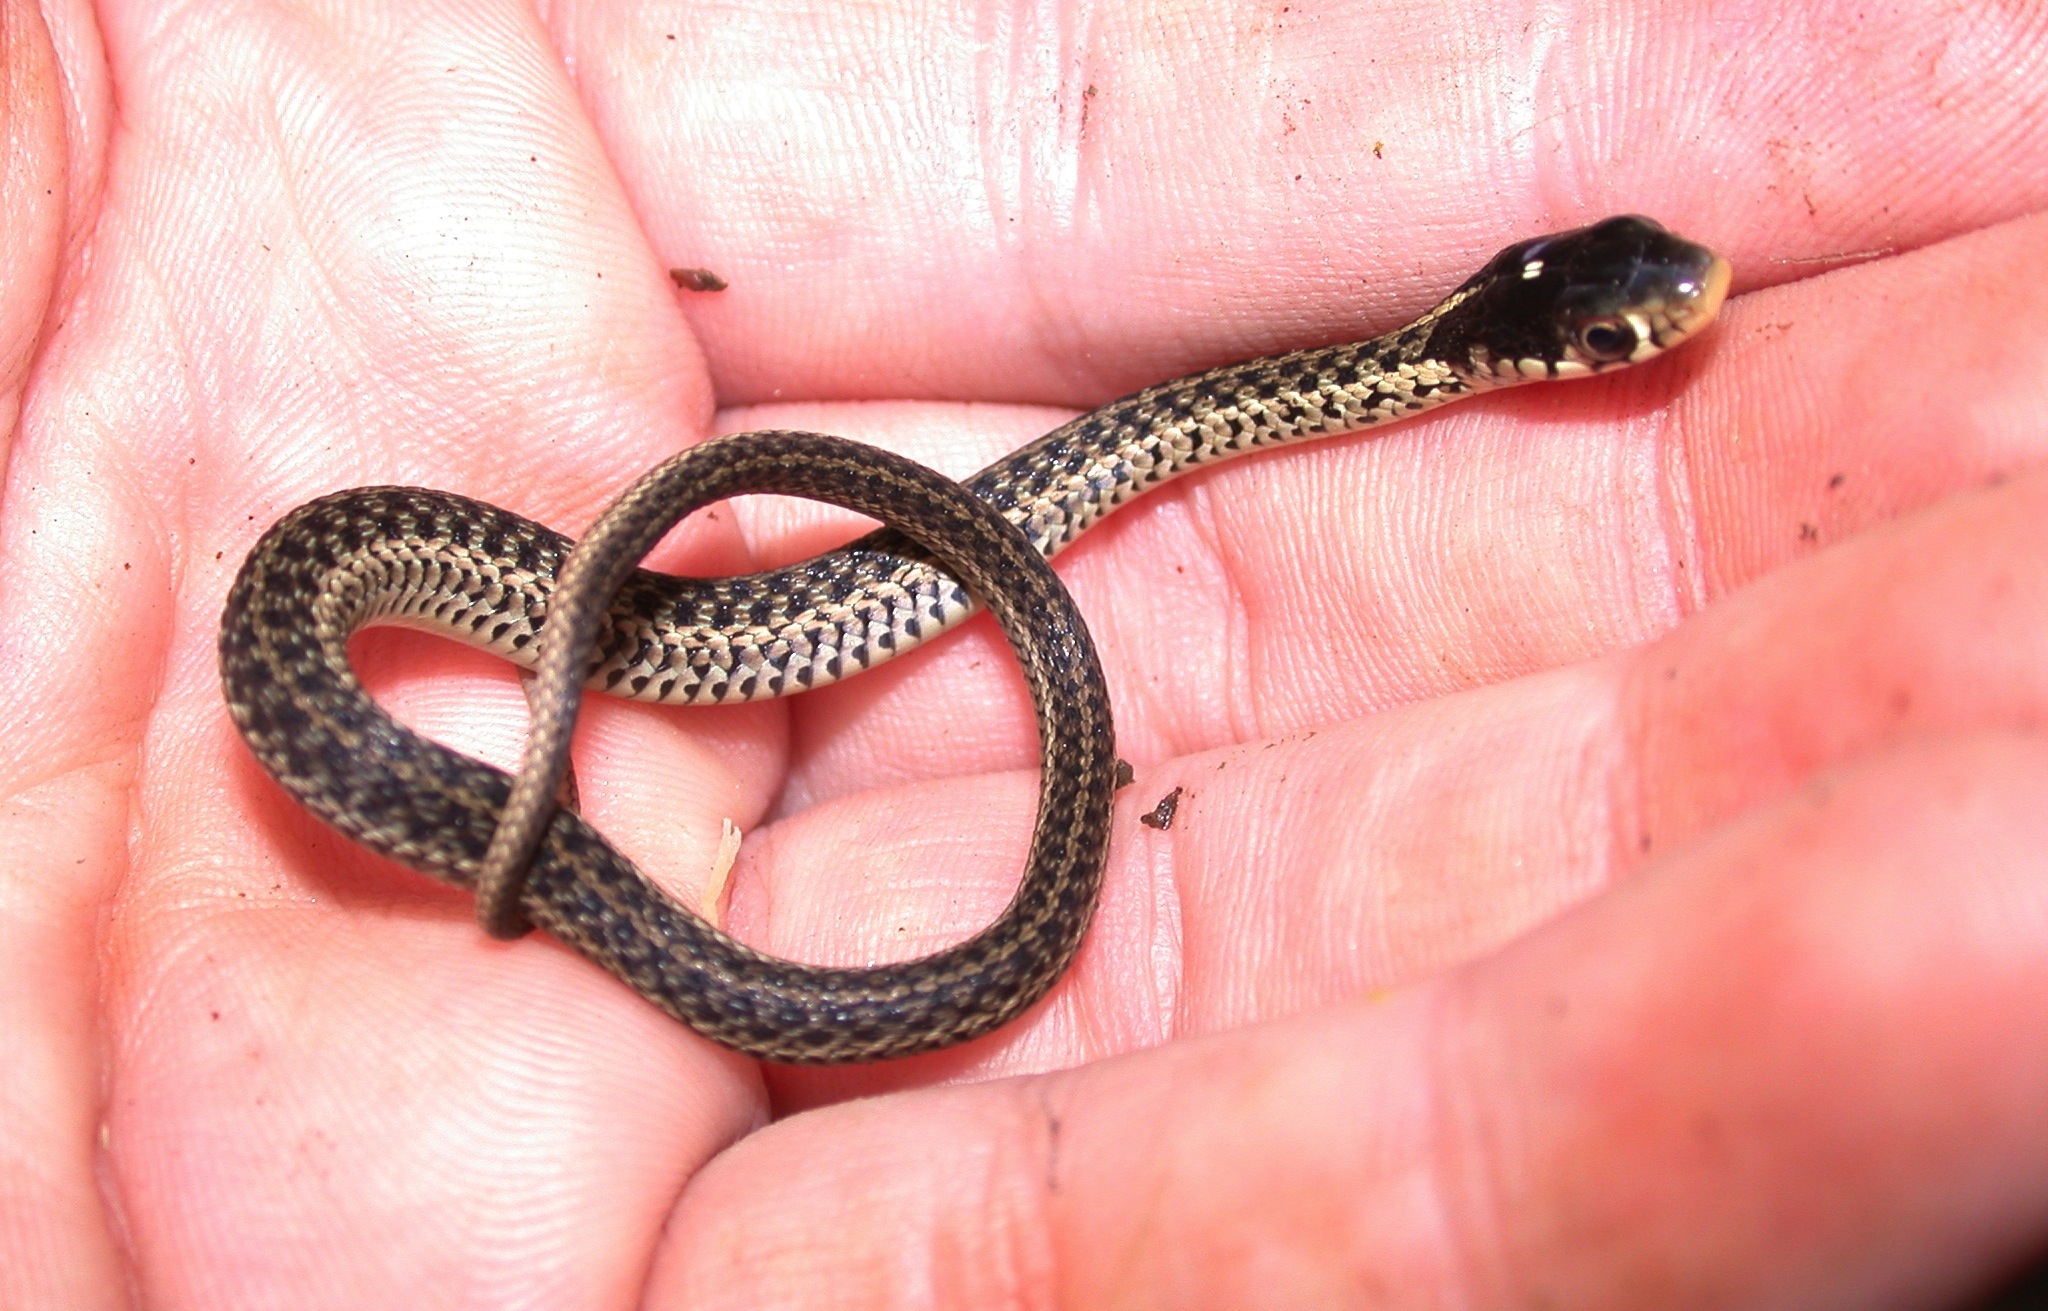 Juvenile garter snake Photo by JD Willson